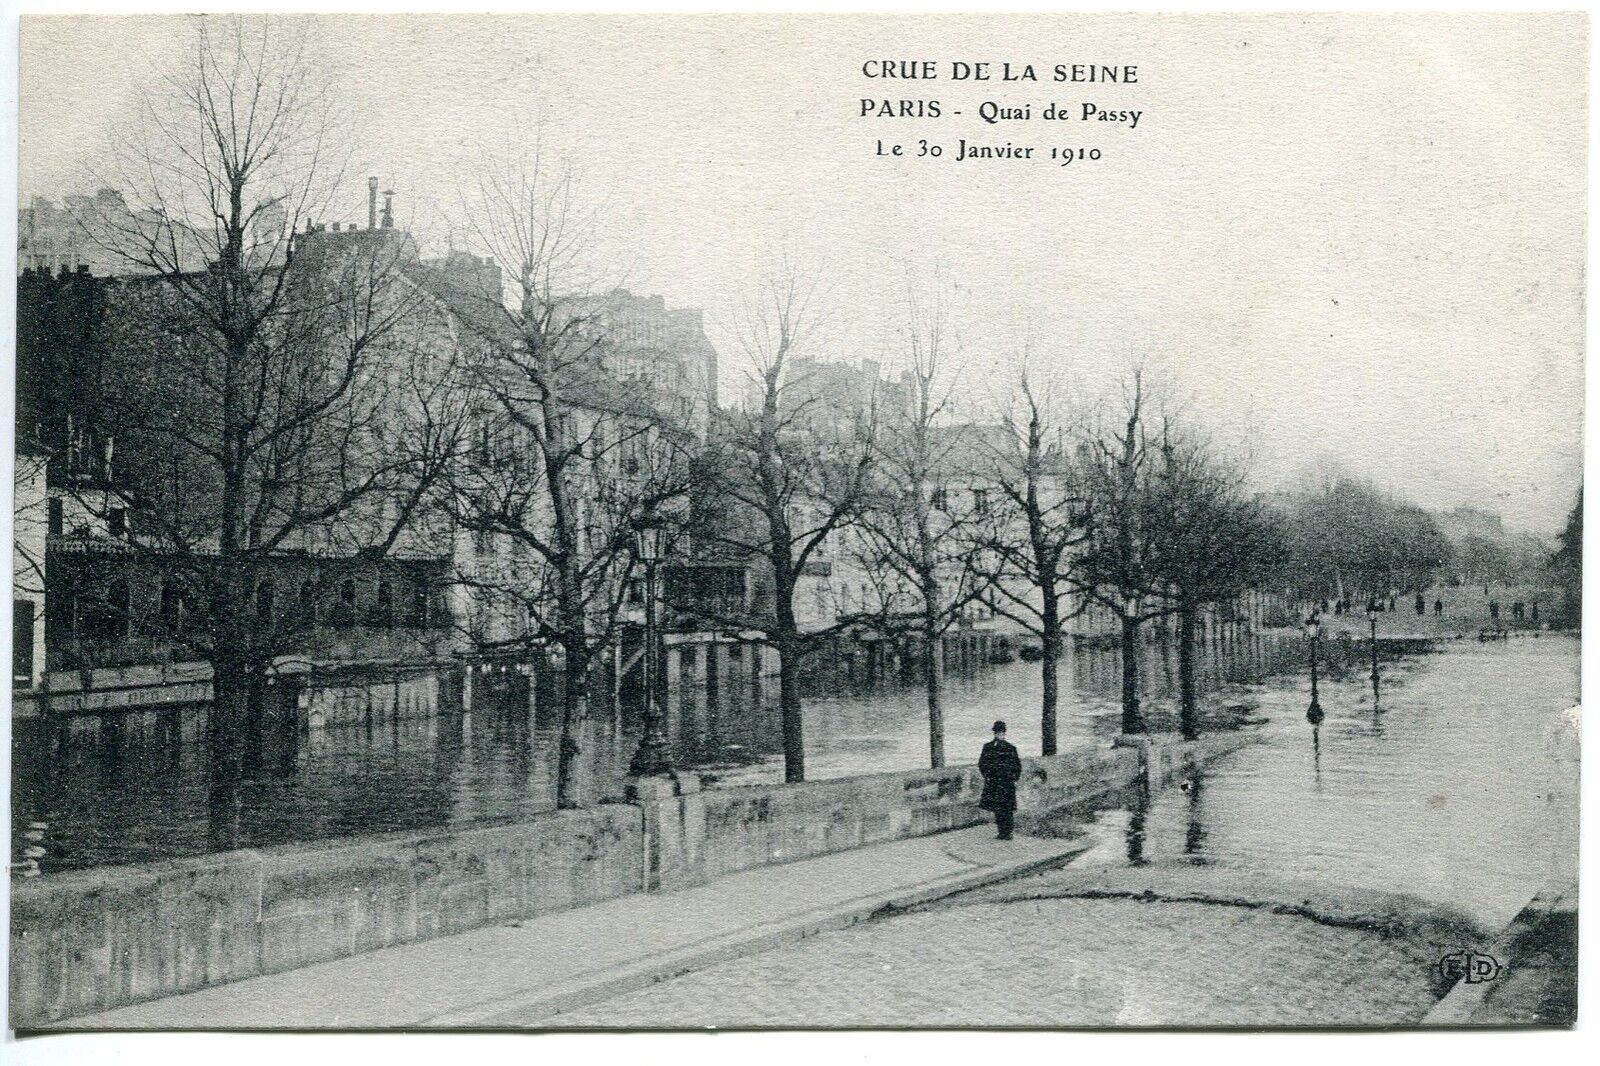 CARTE POSTALE PARIS CRUE DE LA SEINE 30 JANVIER 1910 QUAI DE PASSY 121377850822